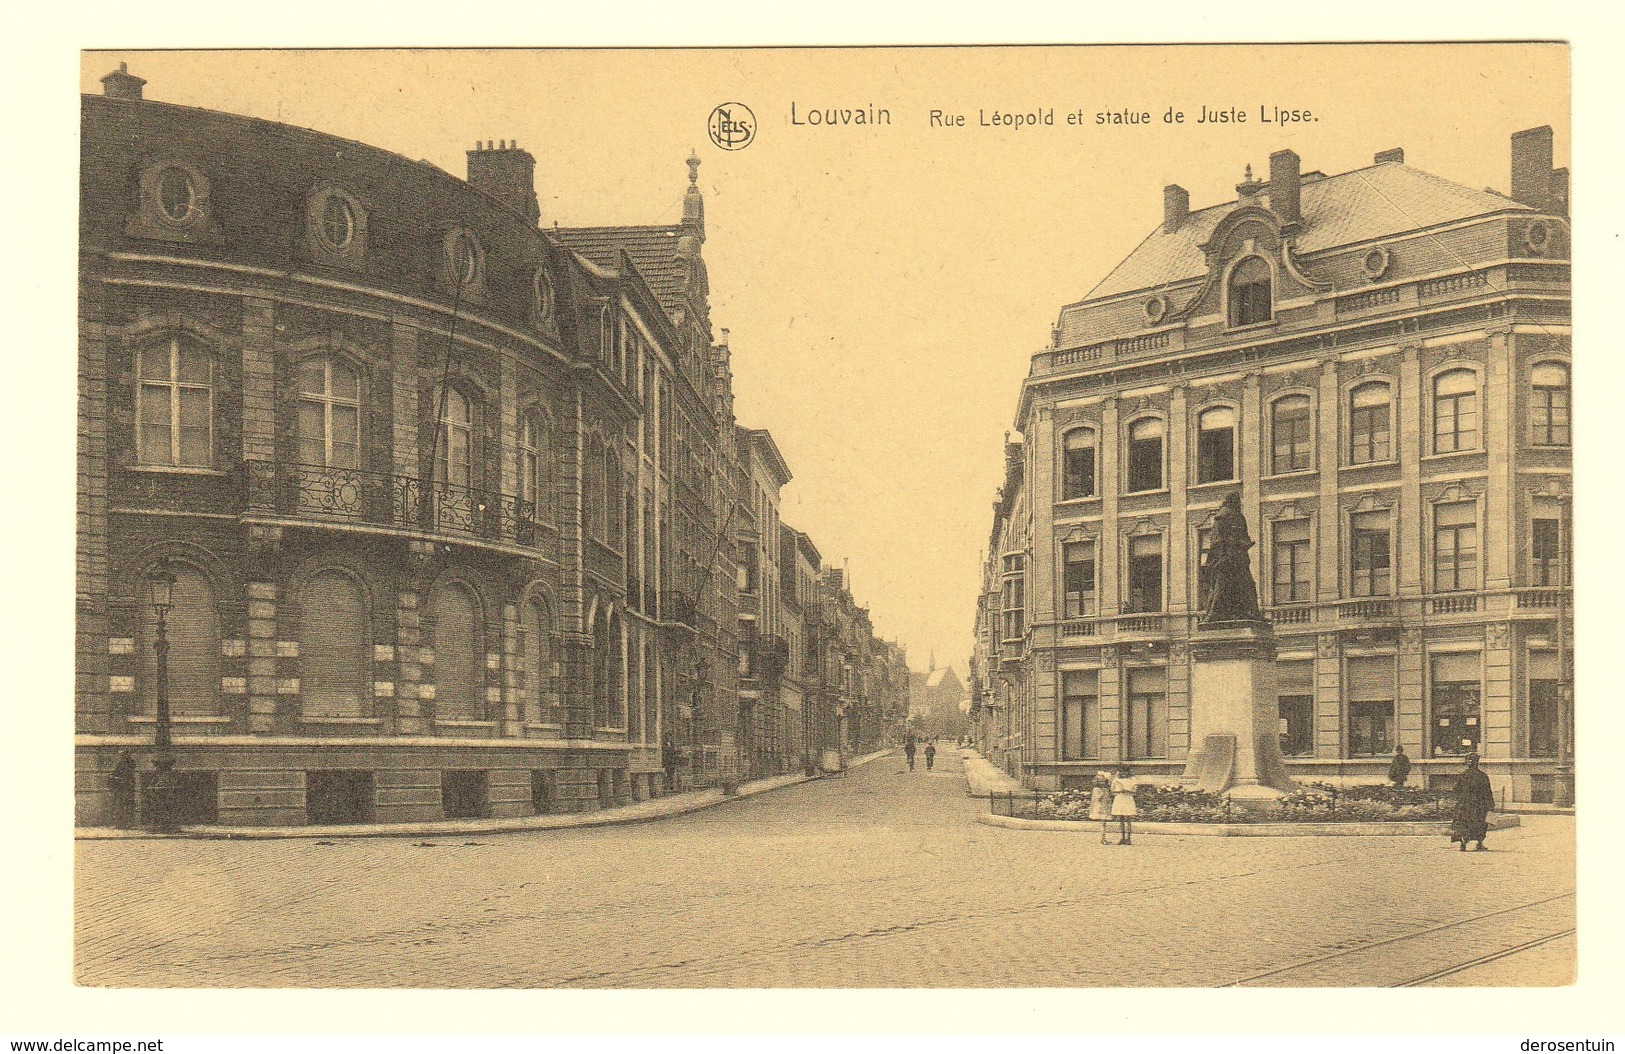 #21565	[Postkaarten] Lot van 39 postkaarten Leuven